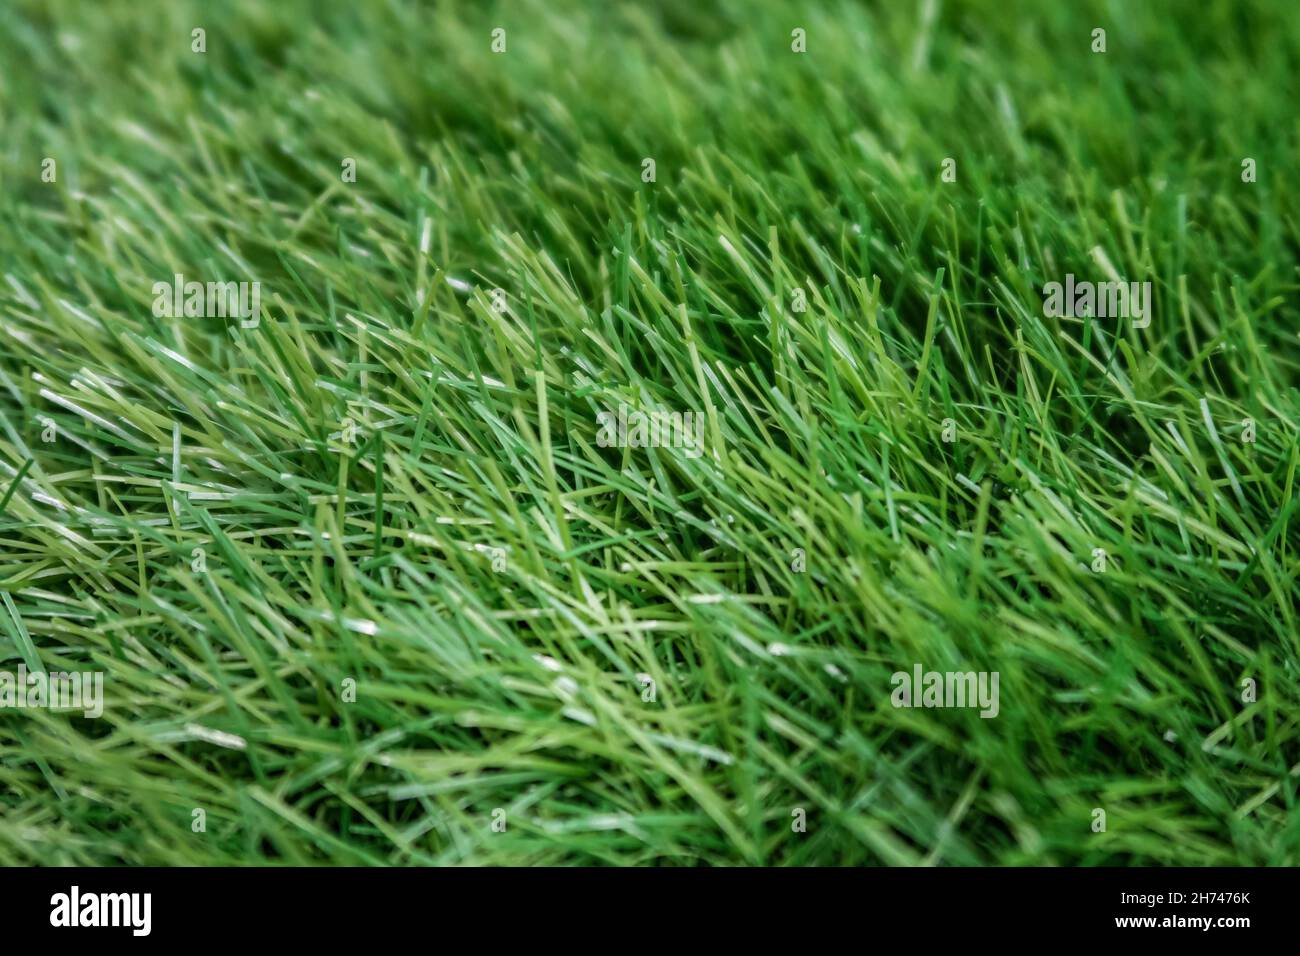 fragment d'une pelouse en plastique dans une faible profondeur de champ.Photo de haute qualité Banque D'Images